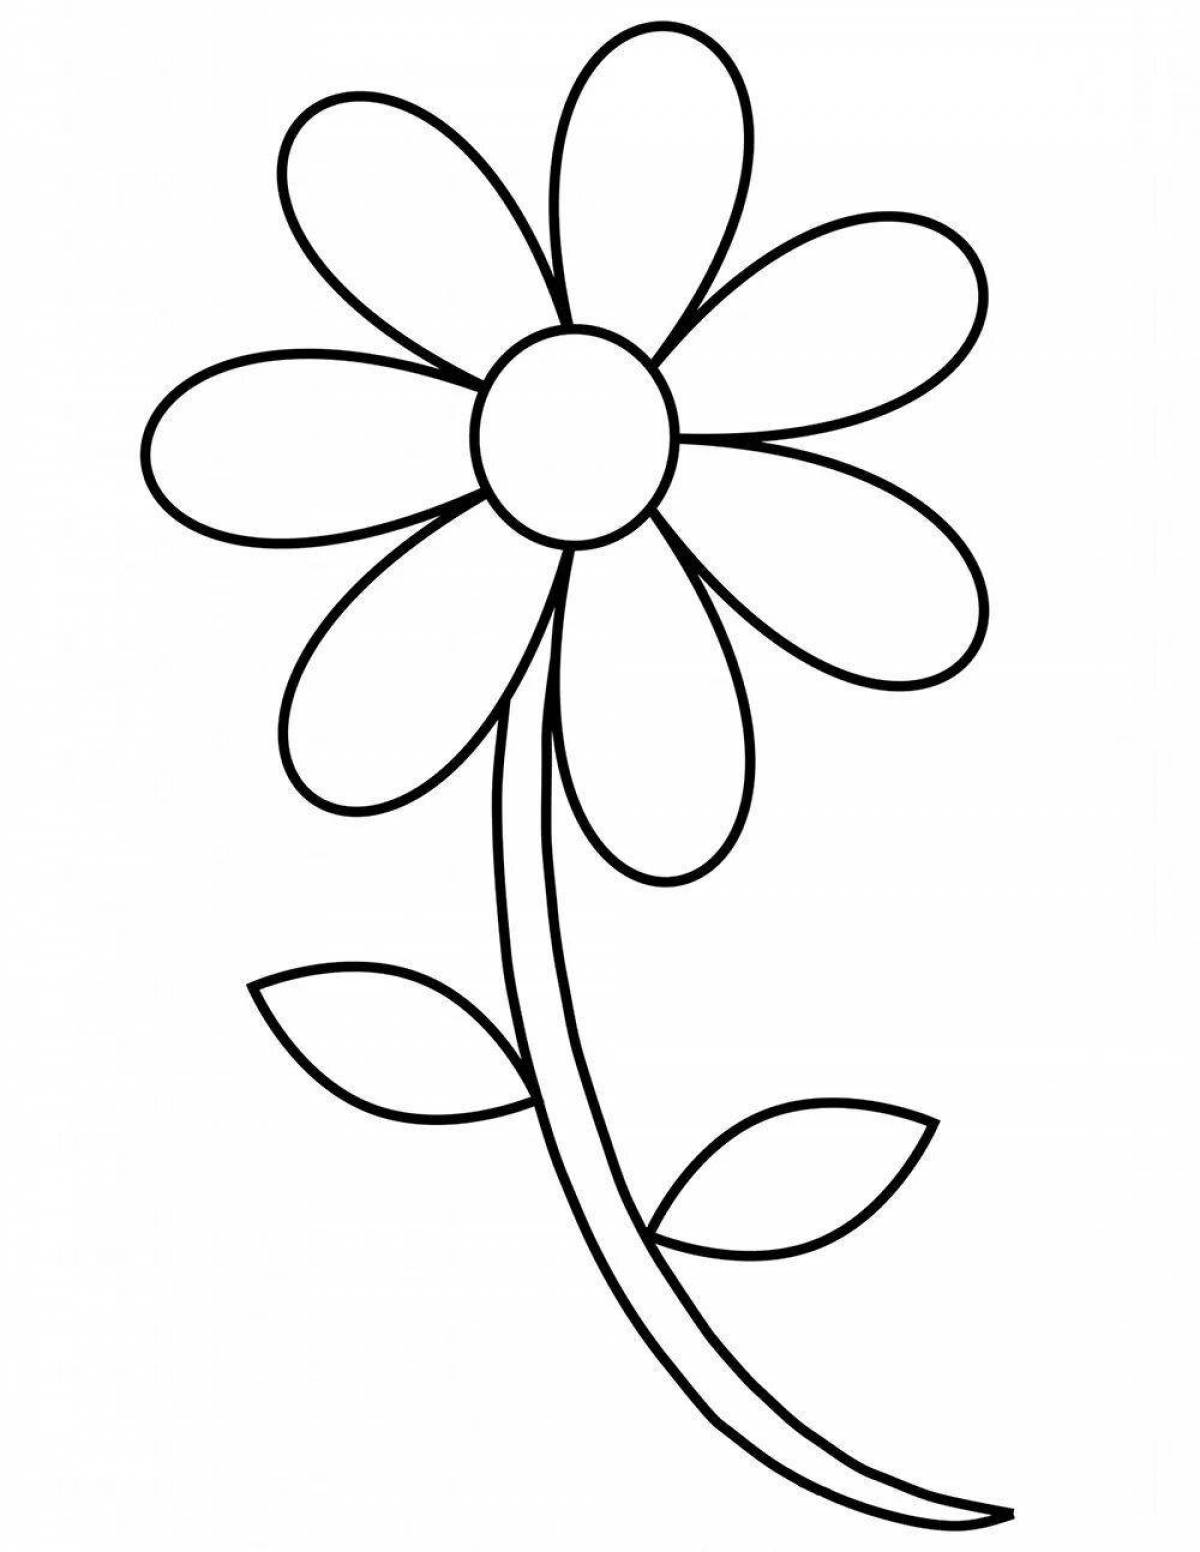 Увлекательная раскраска цветок семицветик